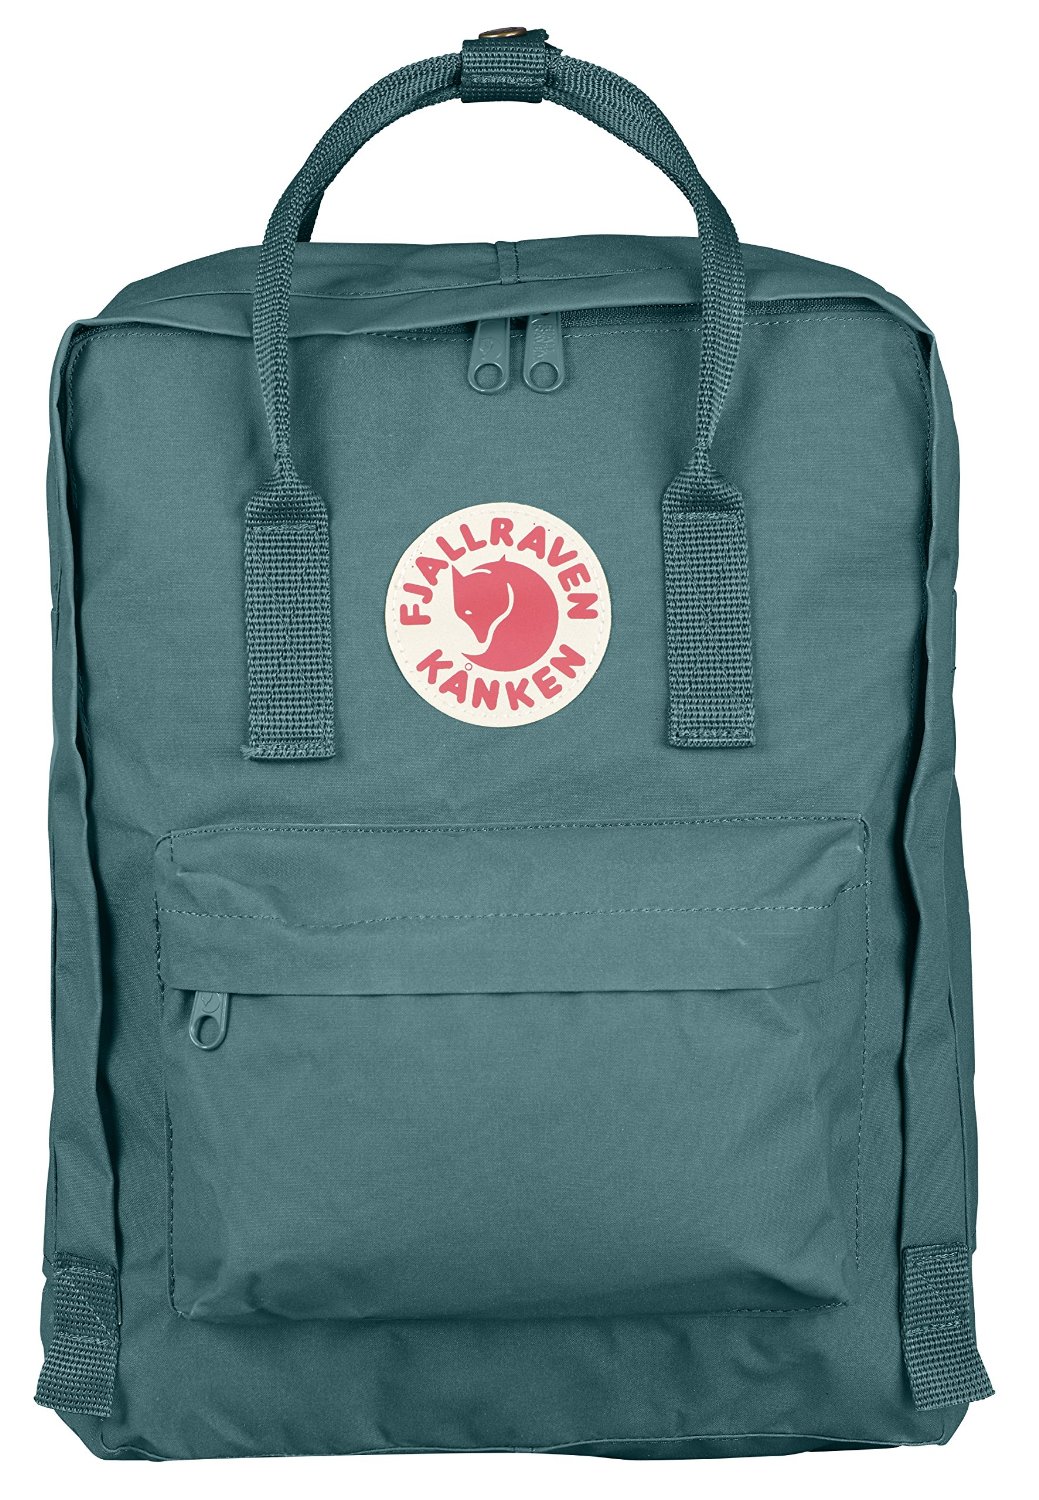 16 best affordable backpacks